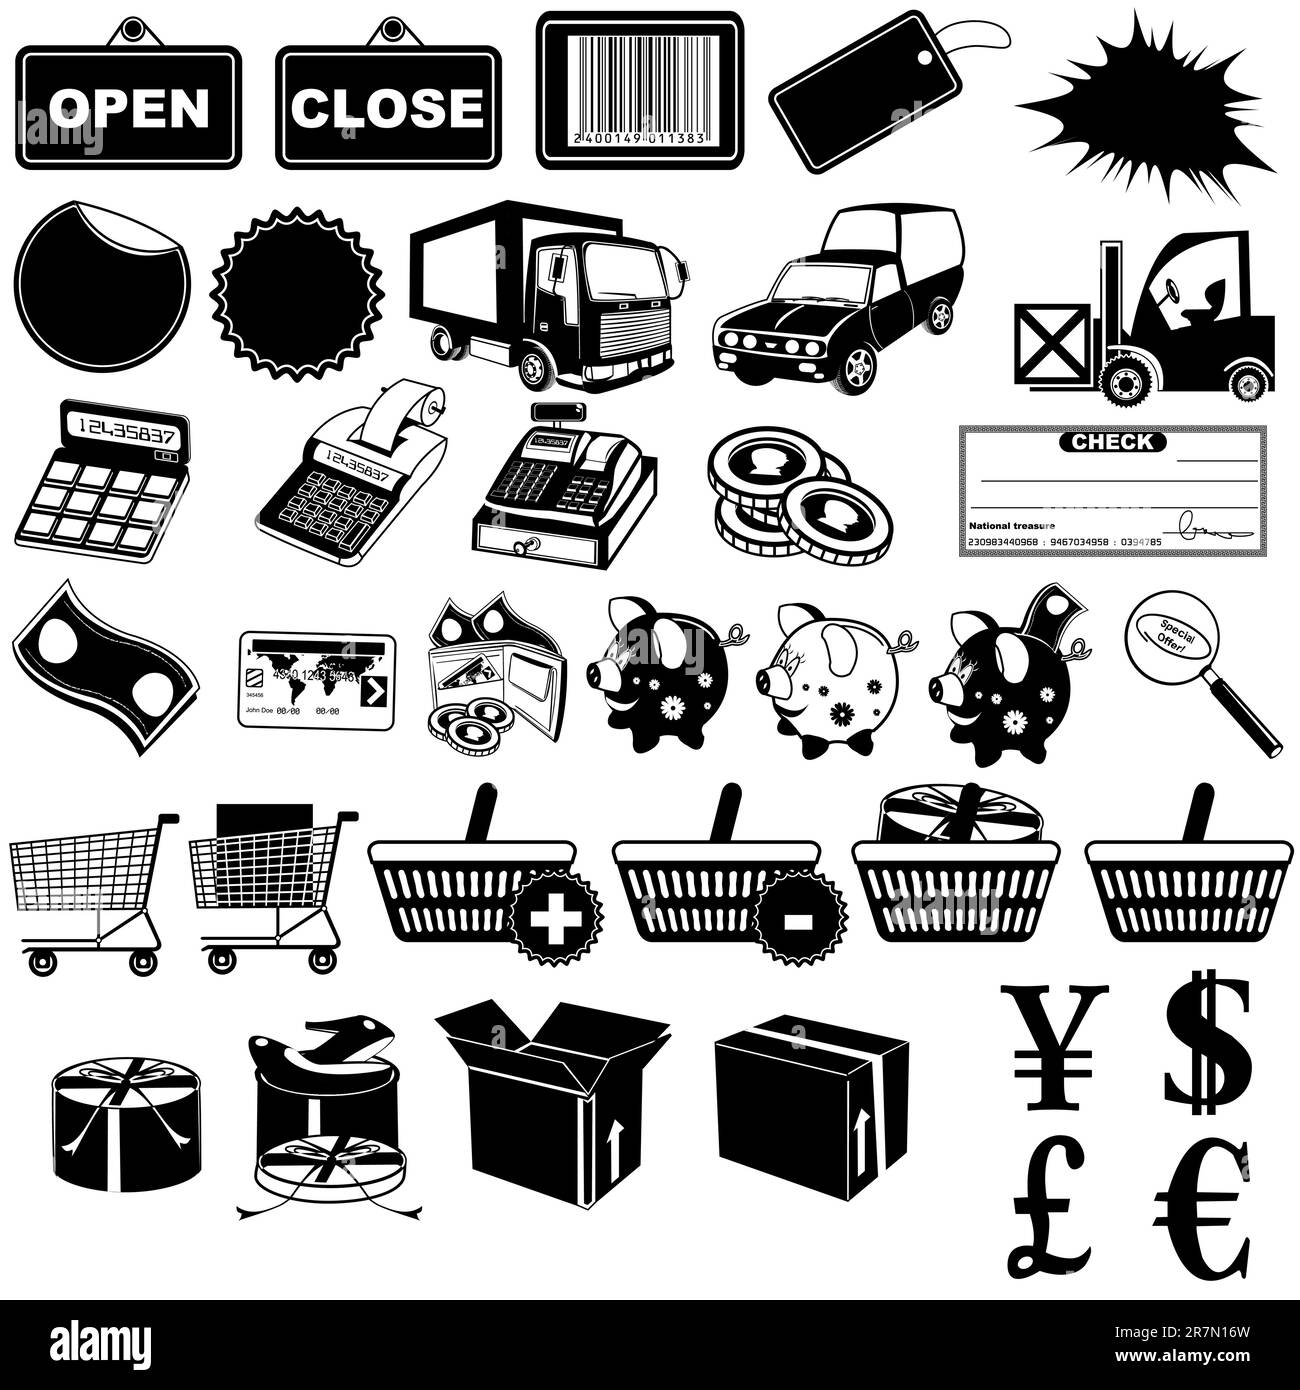 Tolle Kollektion von 24 verschiedenen Symbolen für Shops – Teil 1 Stock Vektor